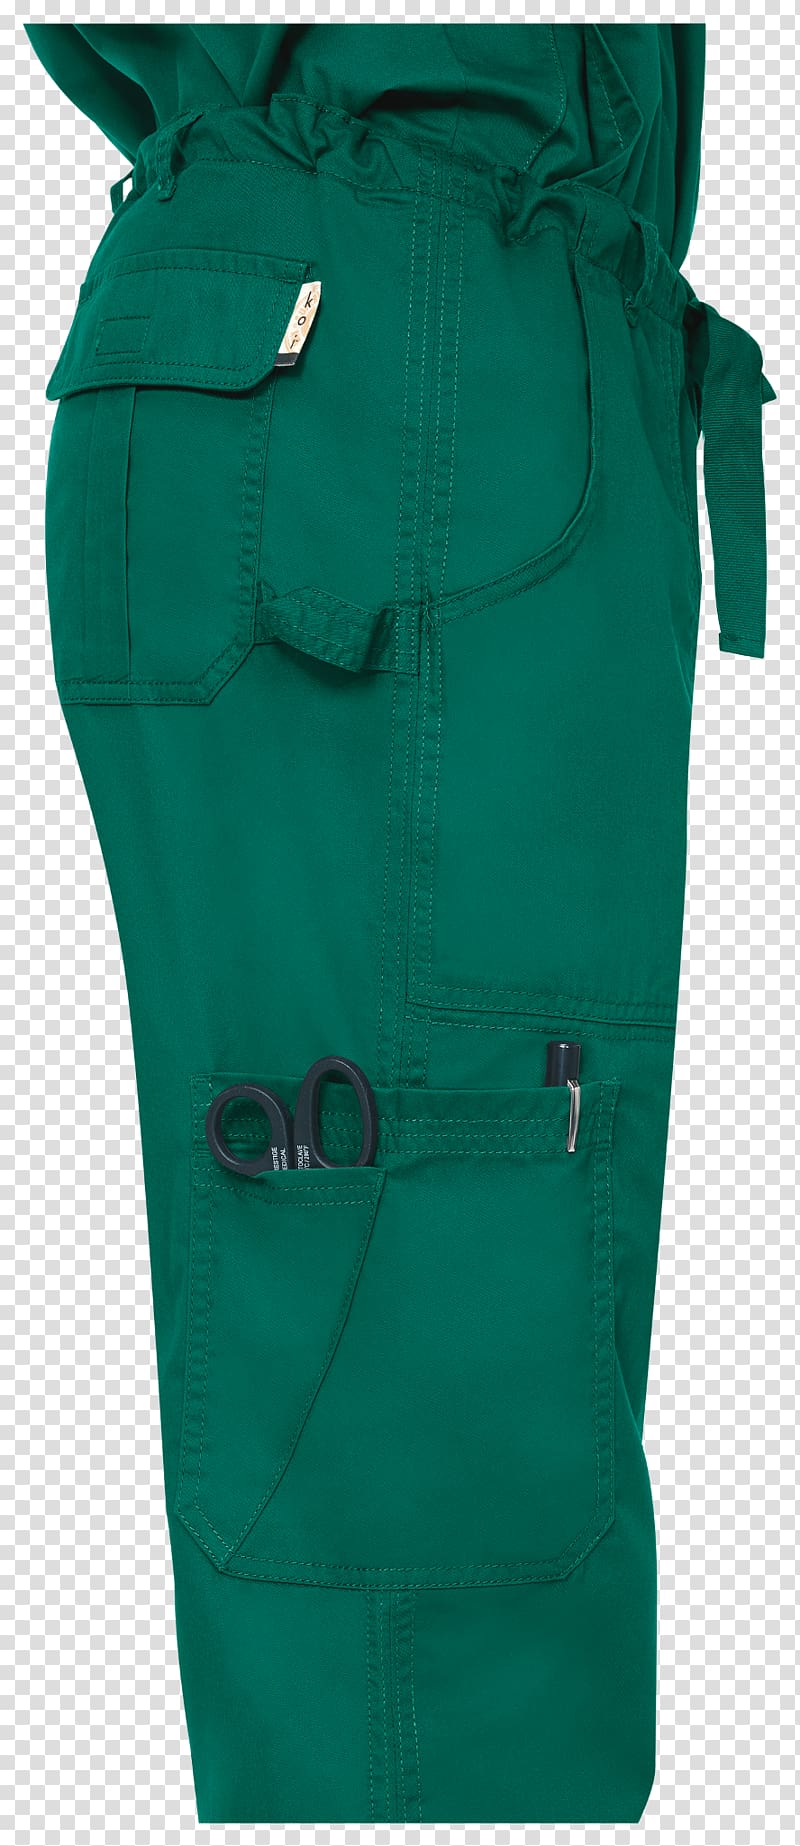 Green Waist Pants, Pilot uniform transparent background PNG clipart